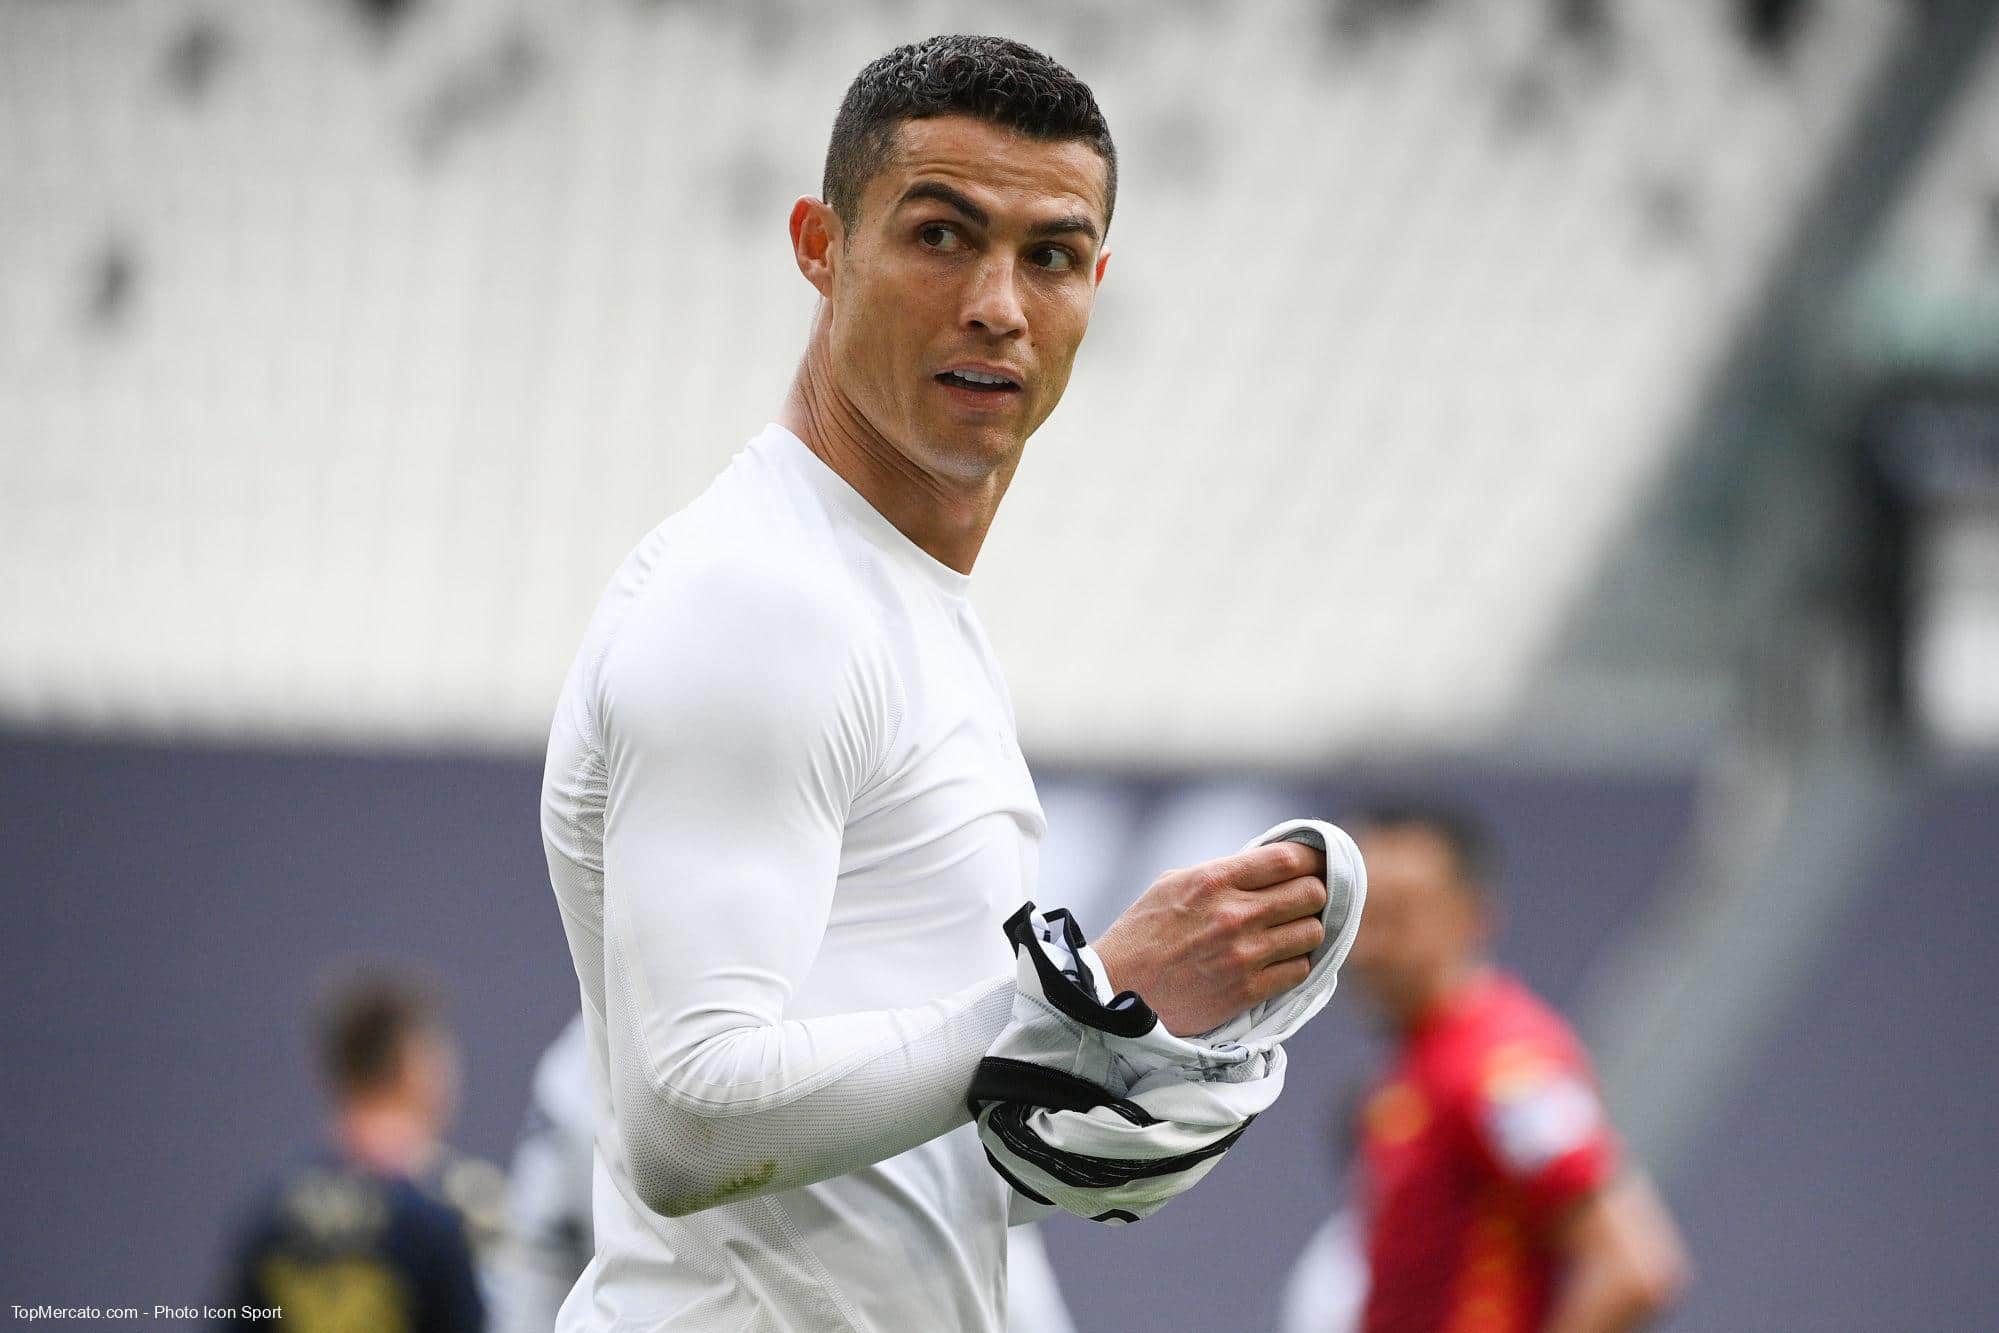 Cristiano Ronaldo révèle les clubs de premier league qu’il souhaite rejoindre